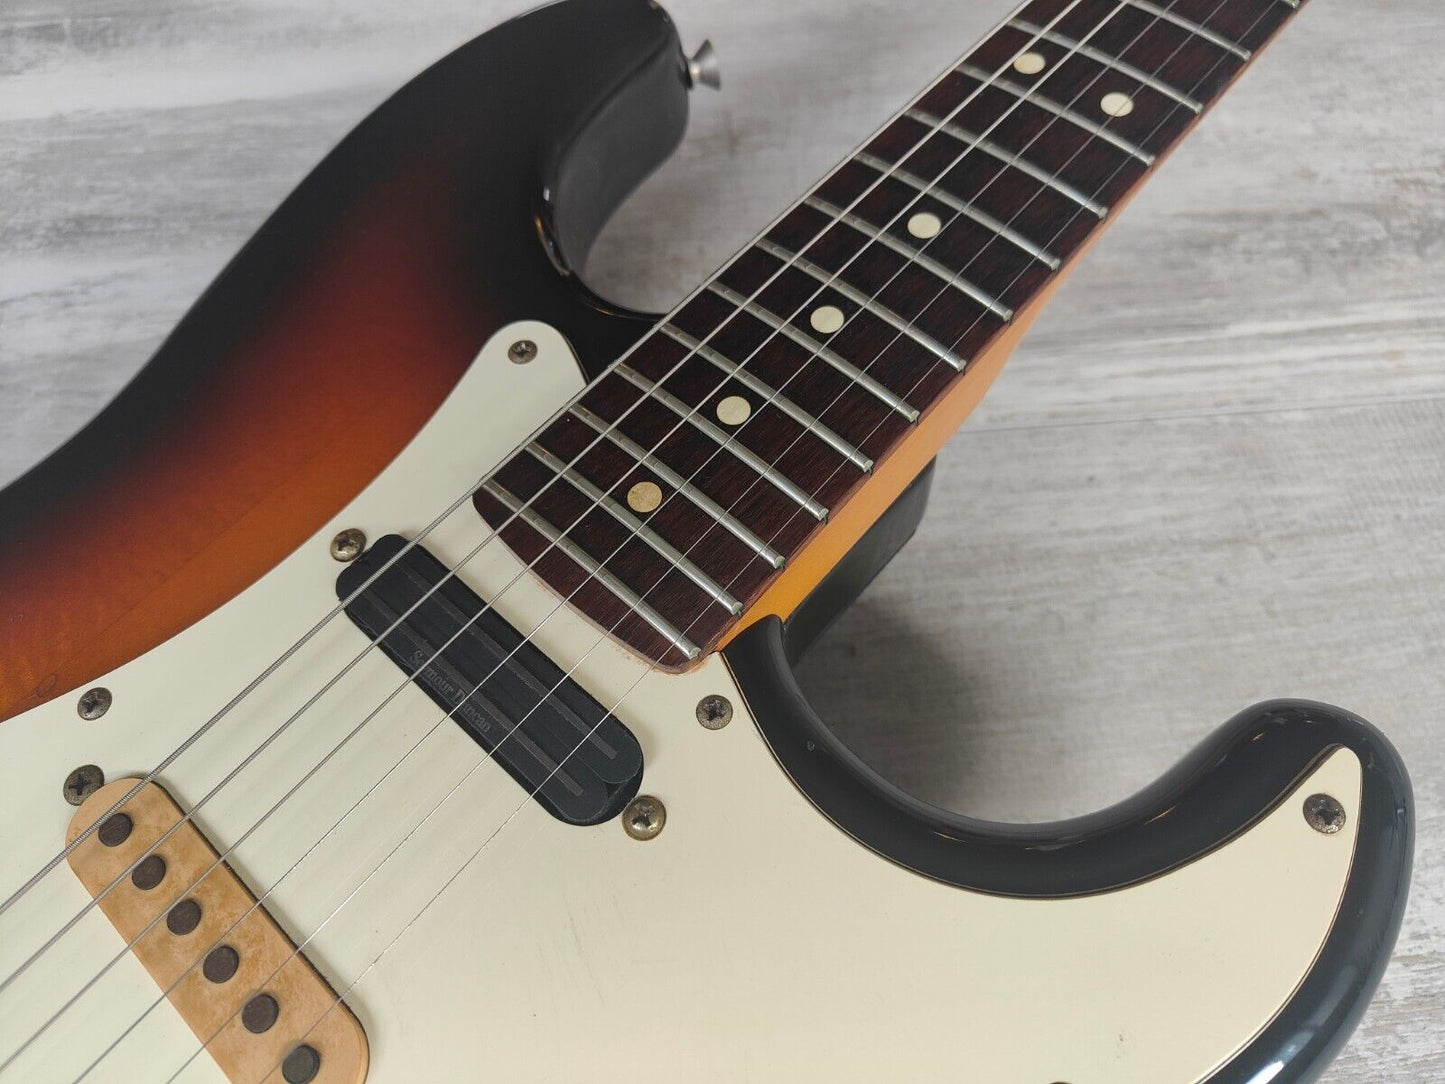 1989 Fender Japan "American Standard" Stratocaster (Sunburst)